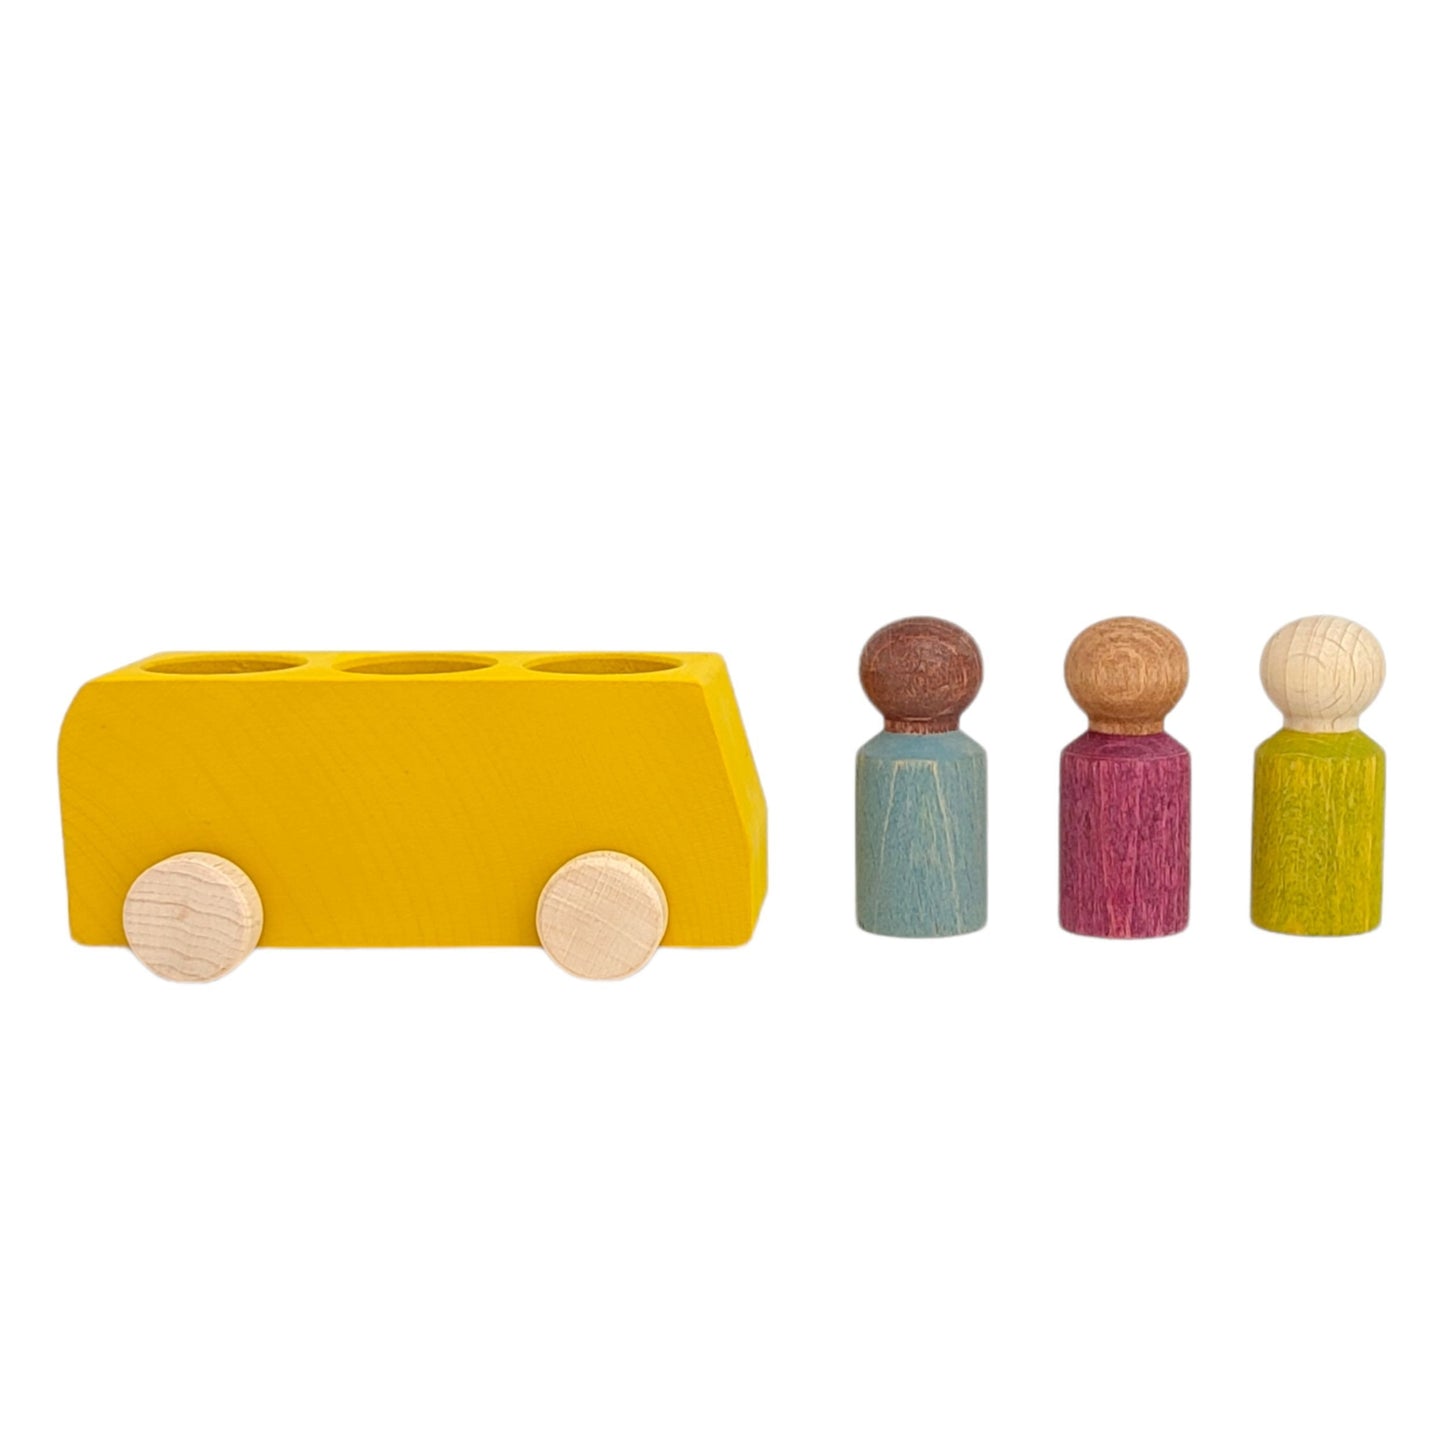 Lubulona Yellow Bus with 3 Figures